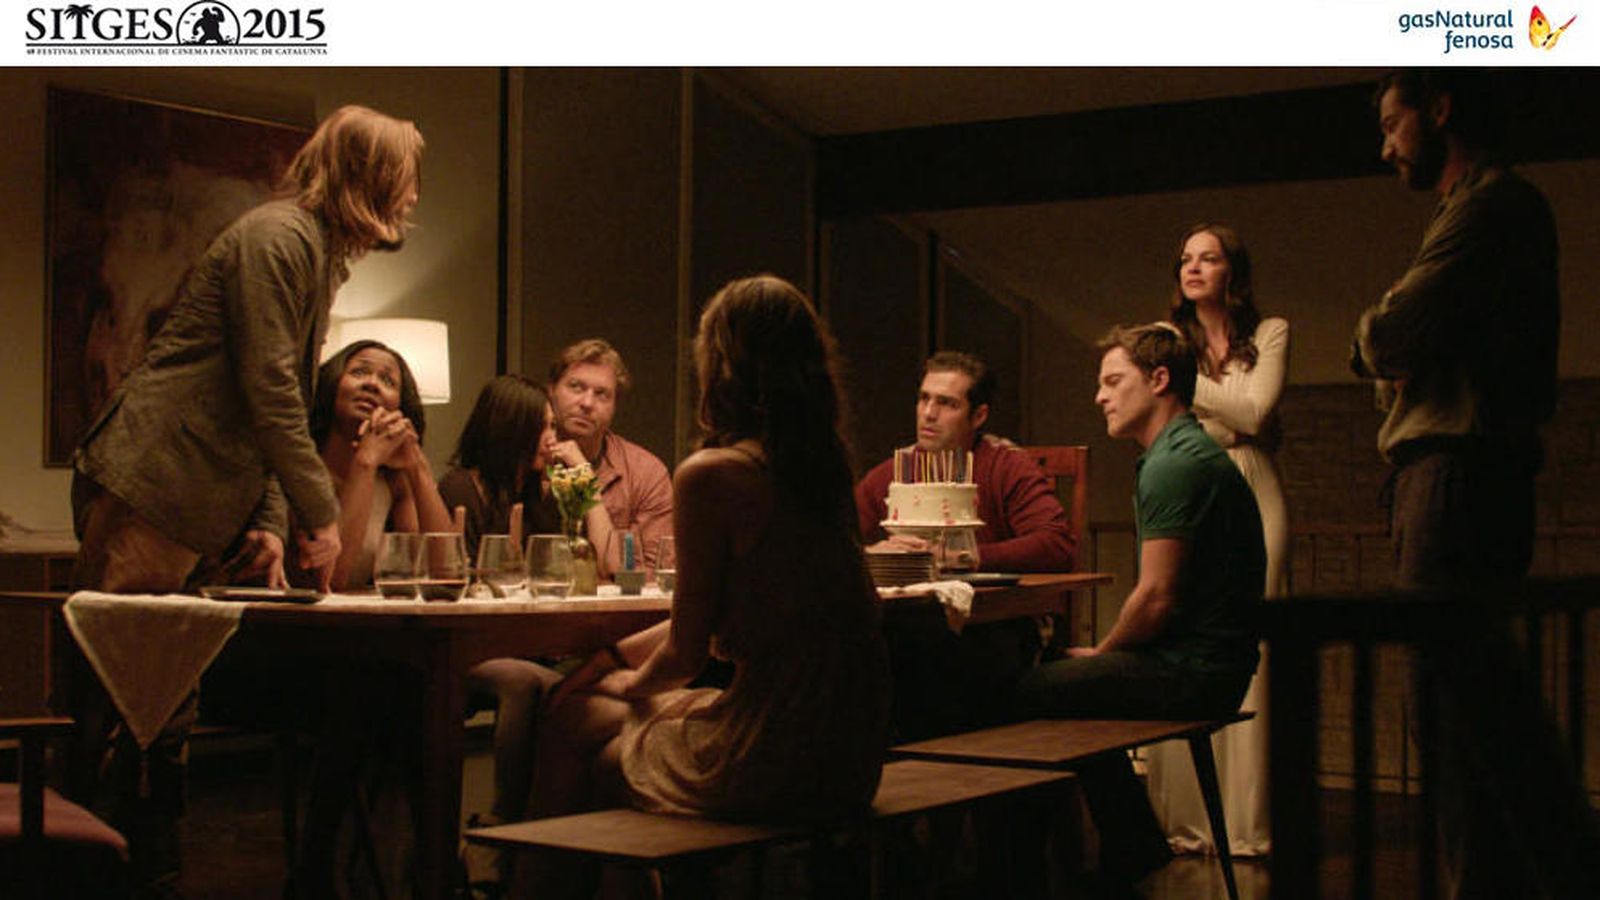 Foto: 'The invitation' gana el premio a la Mejor película en el Festival de Sitges